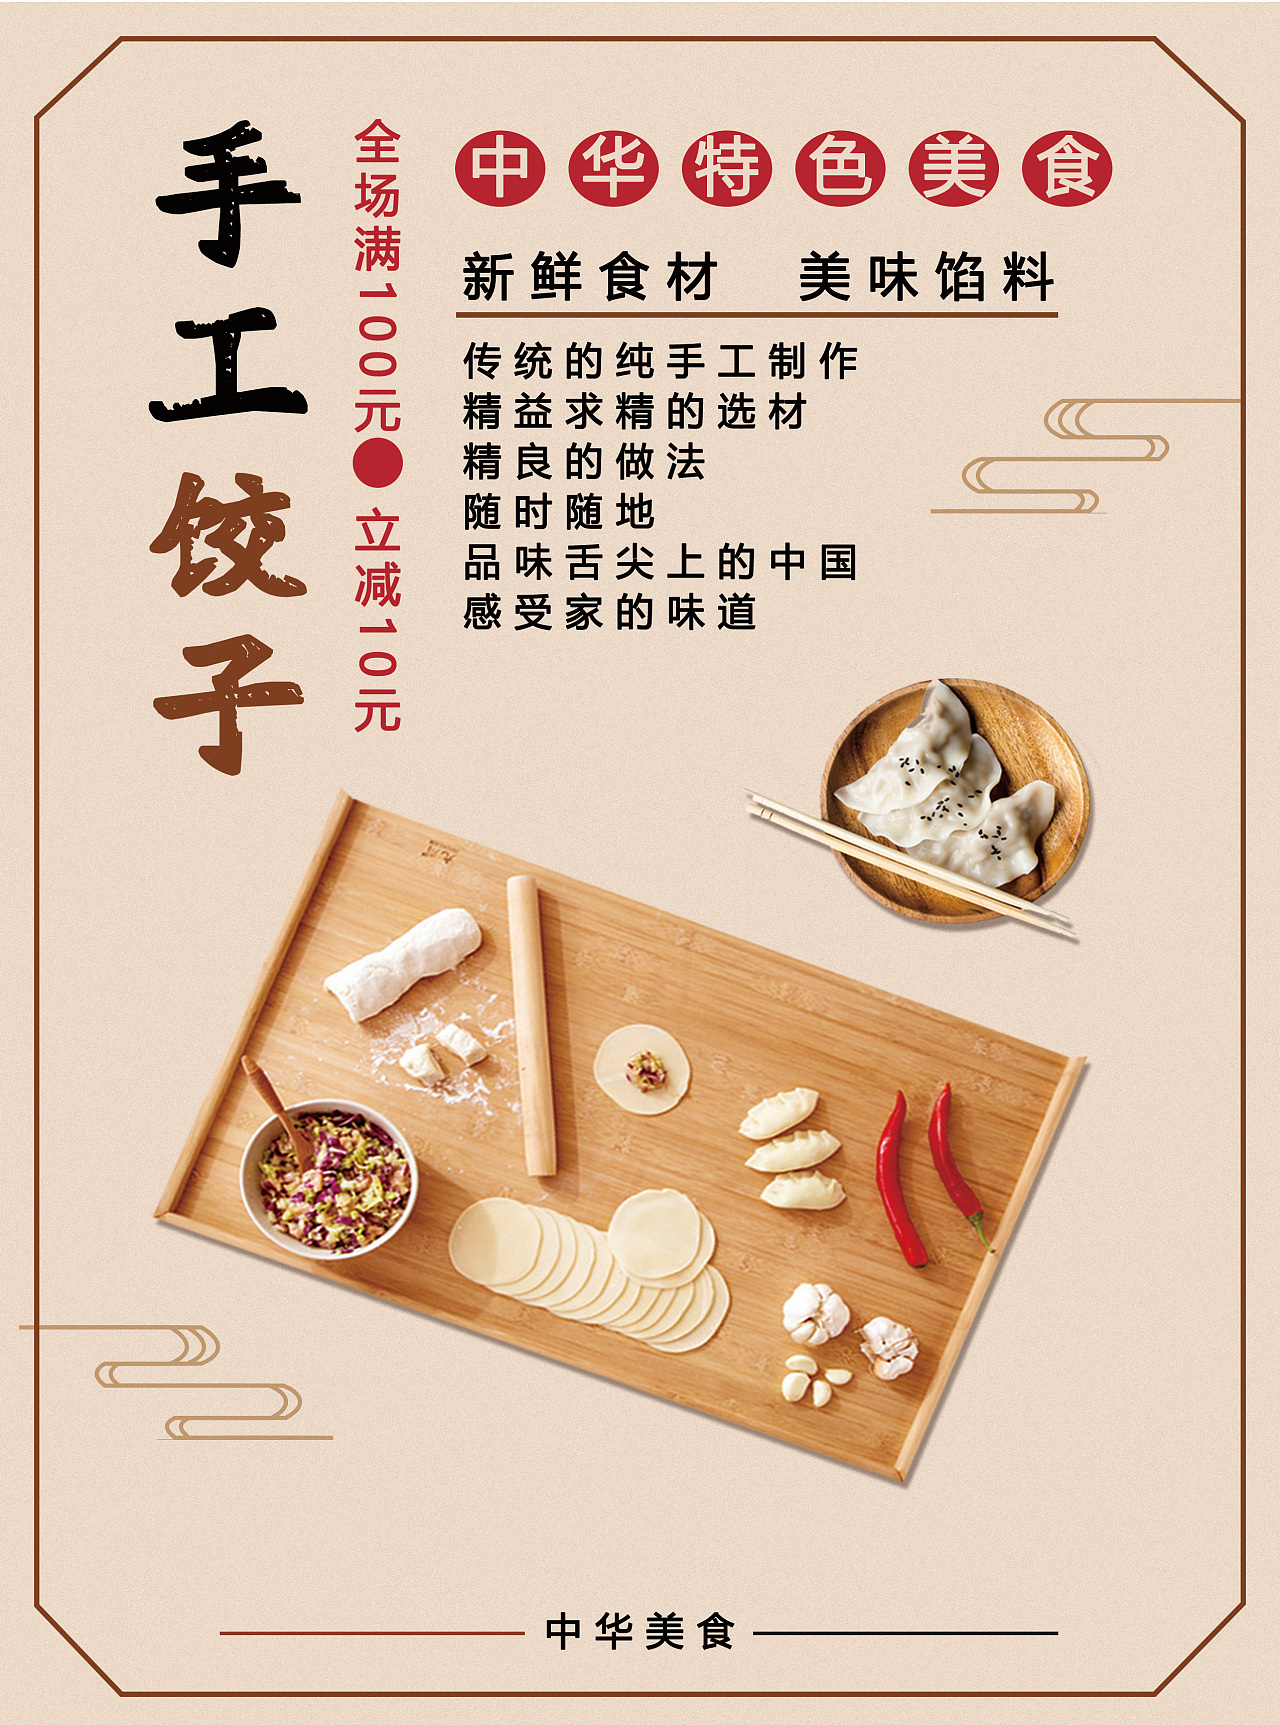 手工水饺广告语大全图片